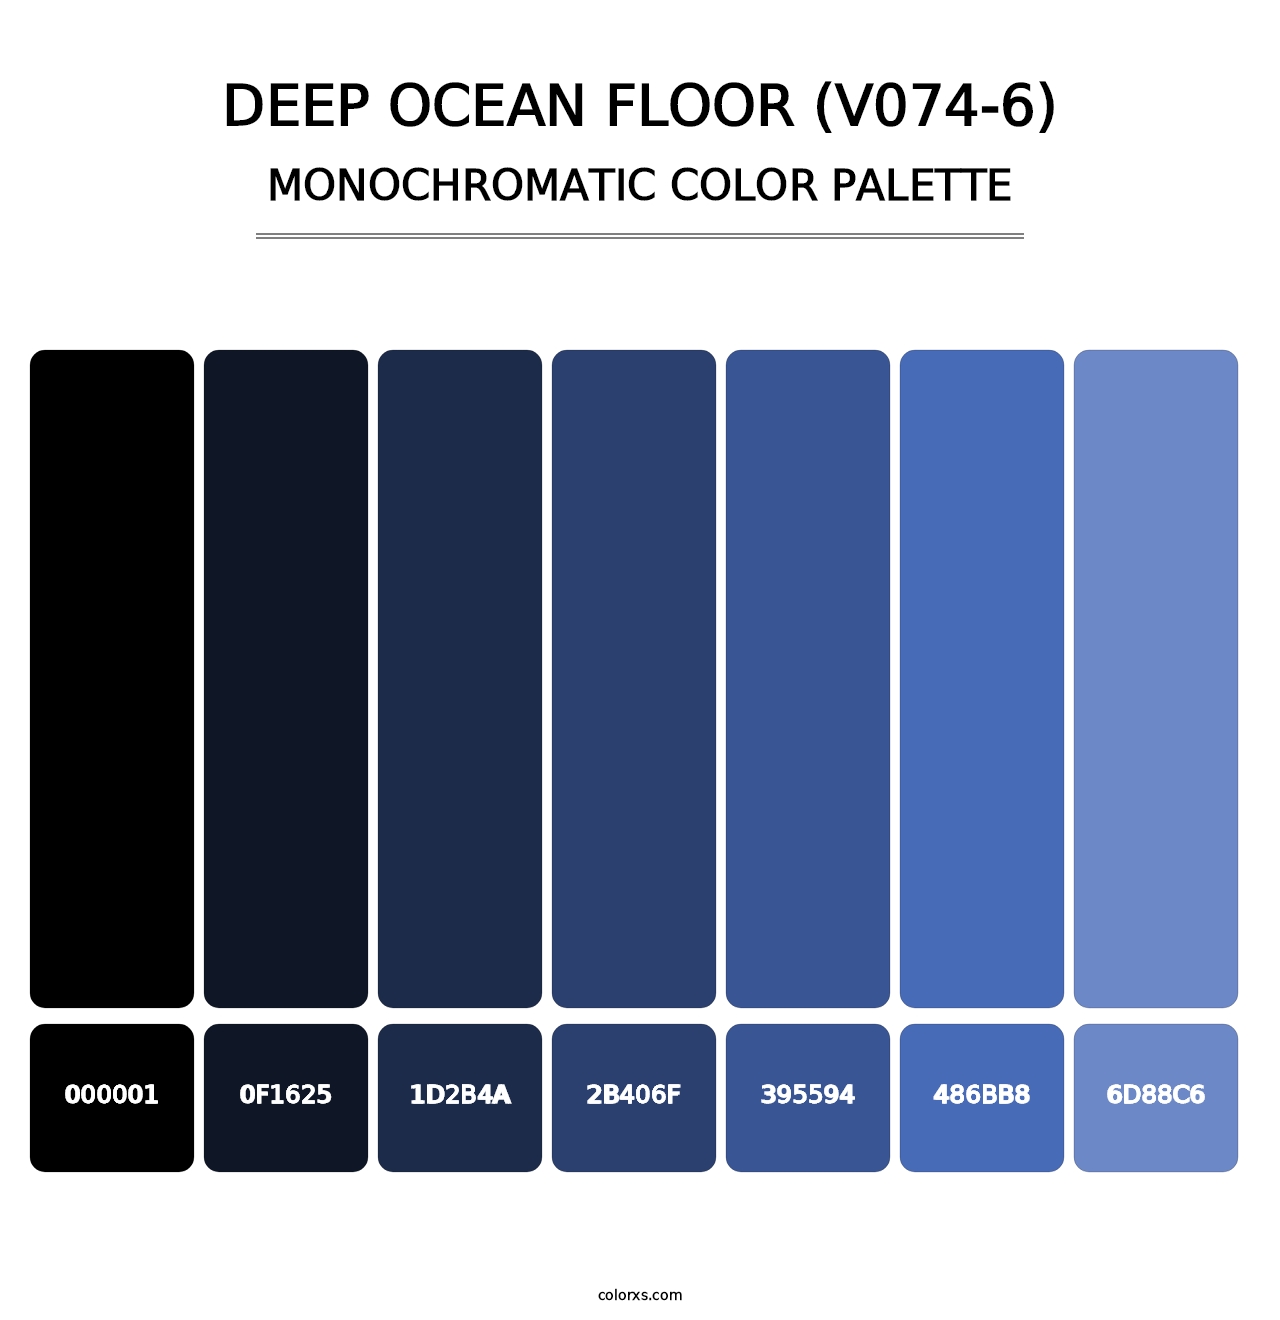 Deep Ocean Floor (V074-6) - Monochromatic Color Palette